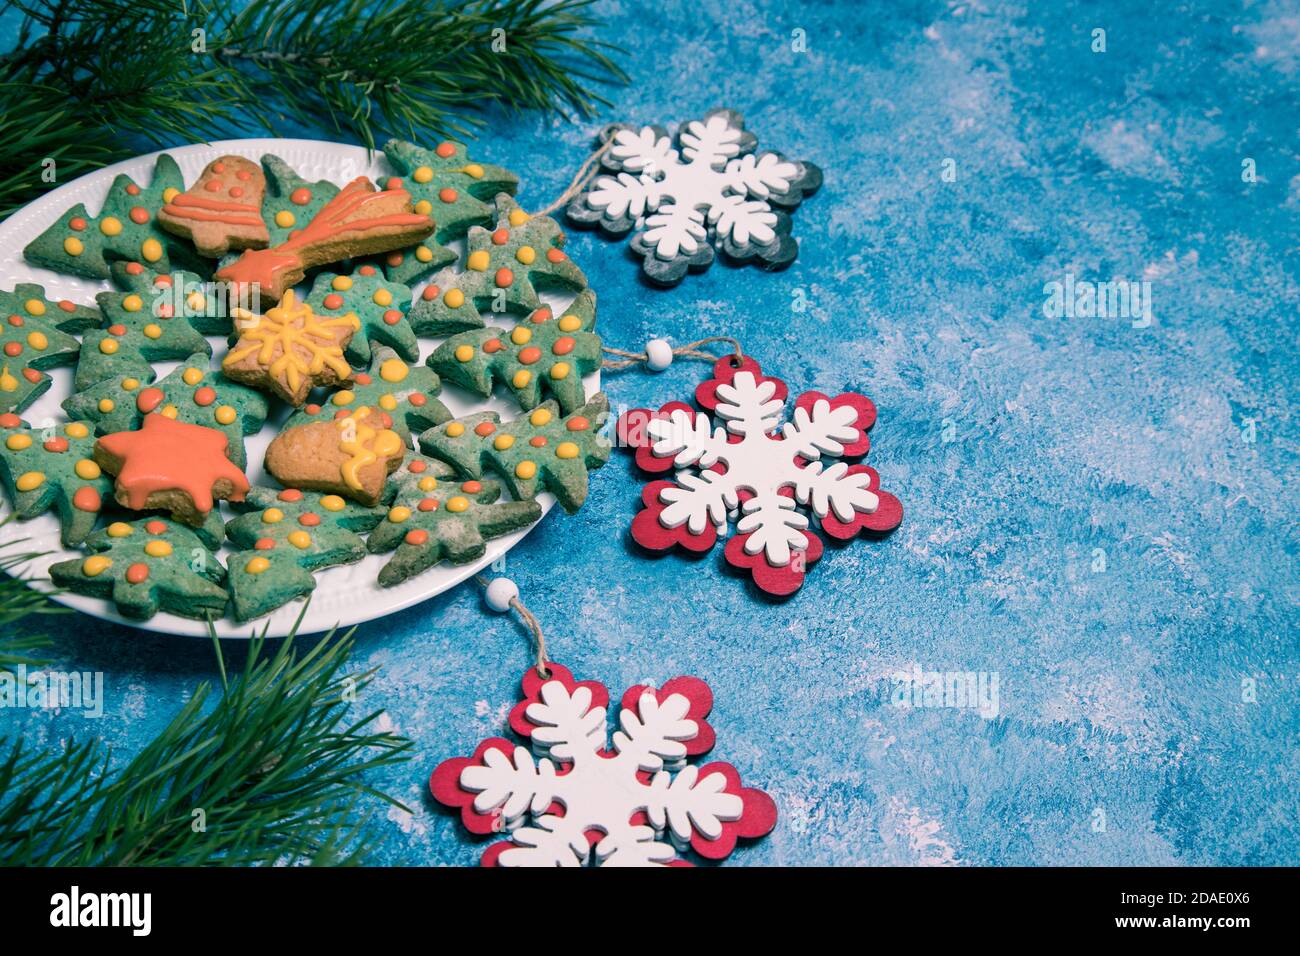 Assiette avec gâteaux faits maison de Noël et décorations de Noël sur fond bleu. Orientation horizontale. Copier l'espace Banque D'Images